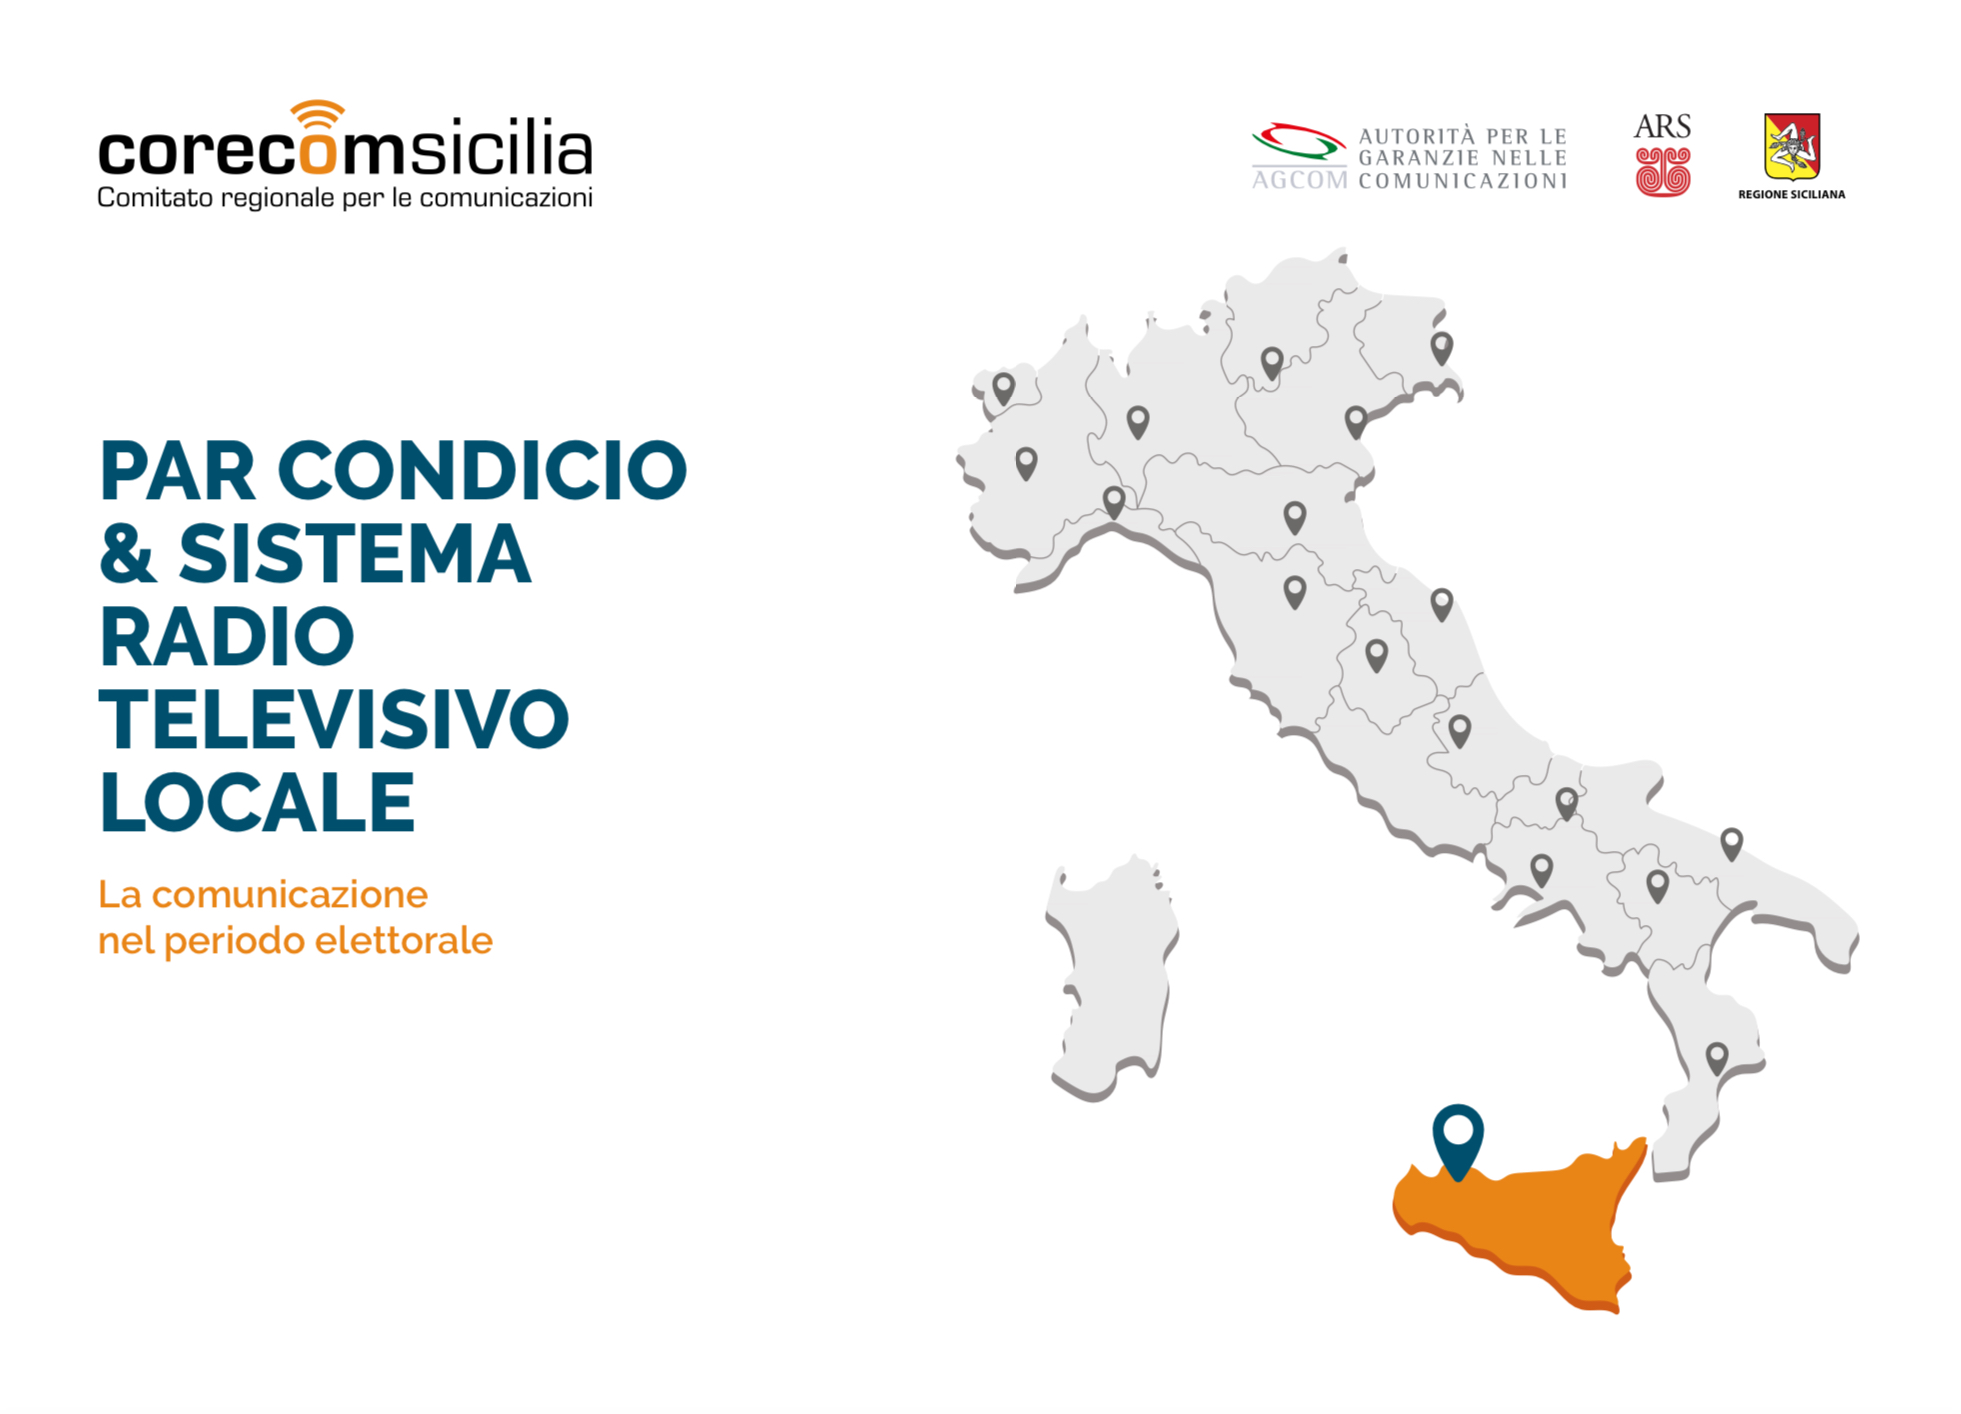 Corecom Sicilia: amministrative e par condicio, le regole per i giornalisti